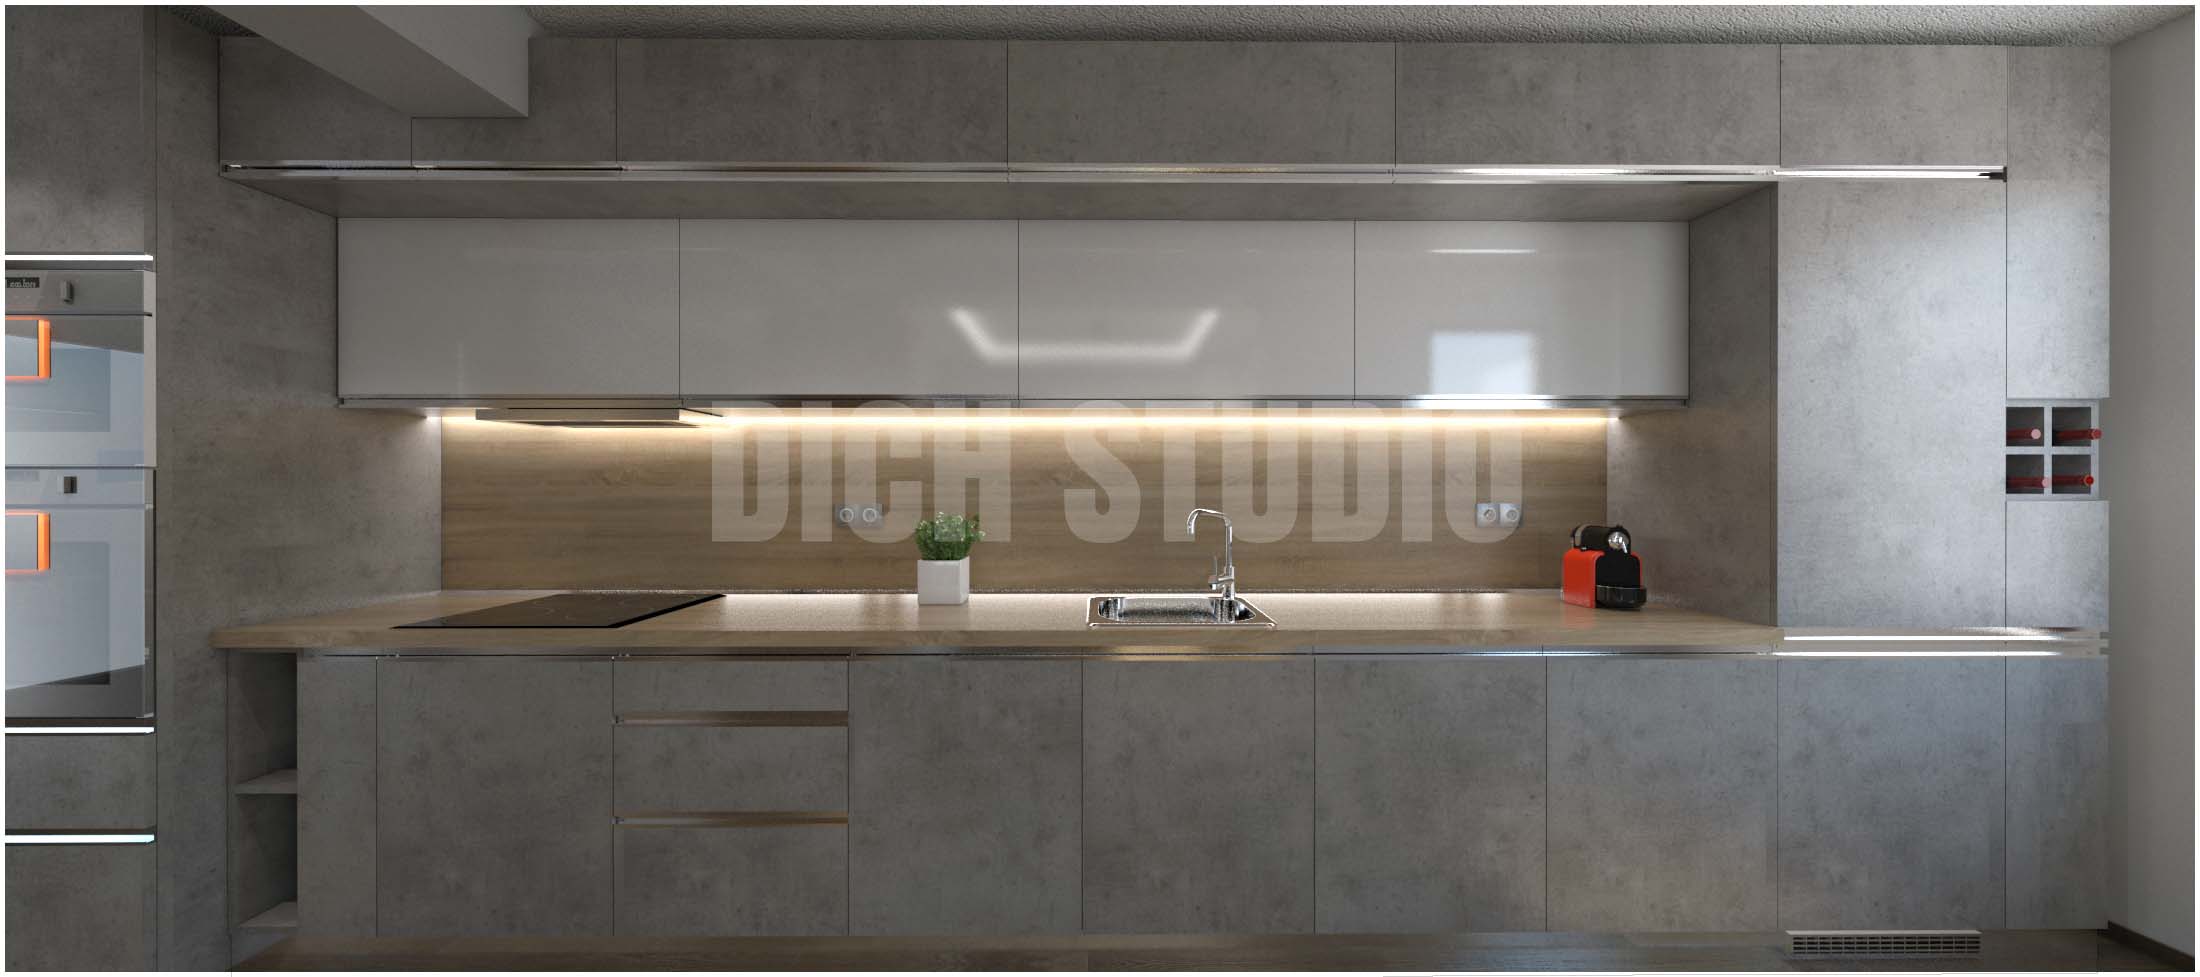 Визуализация на кухня 3d